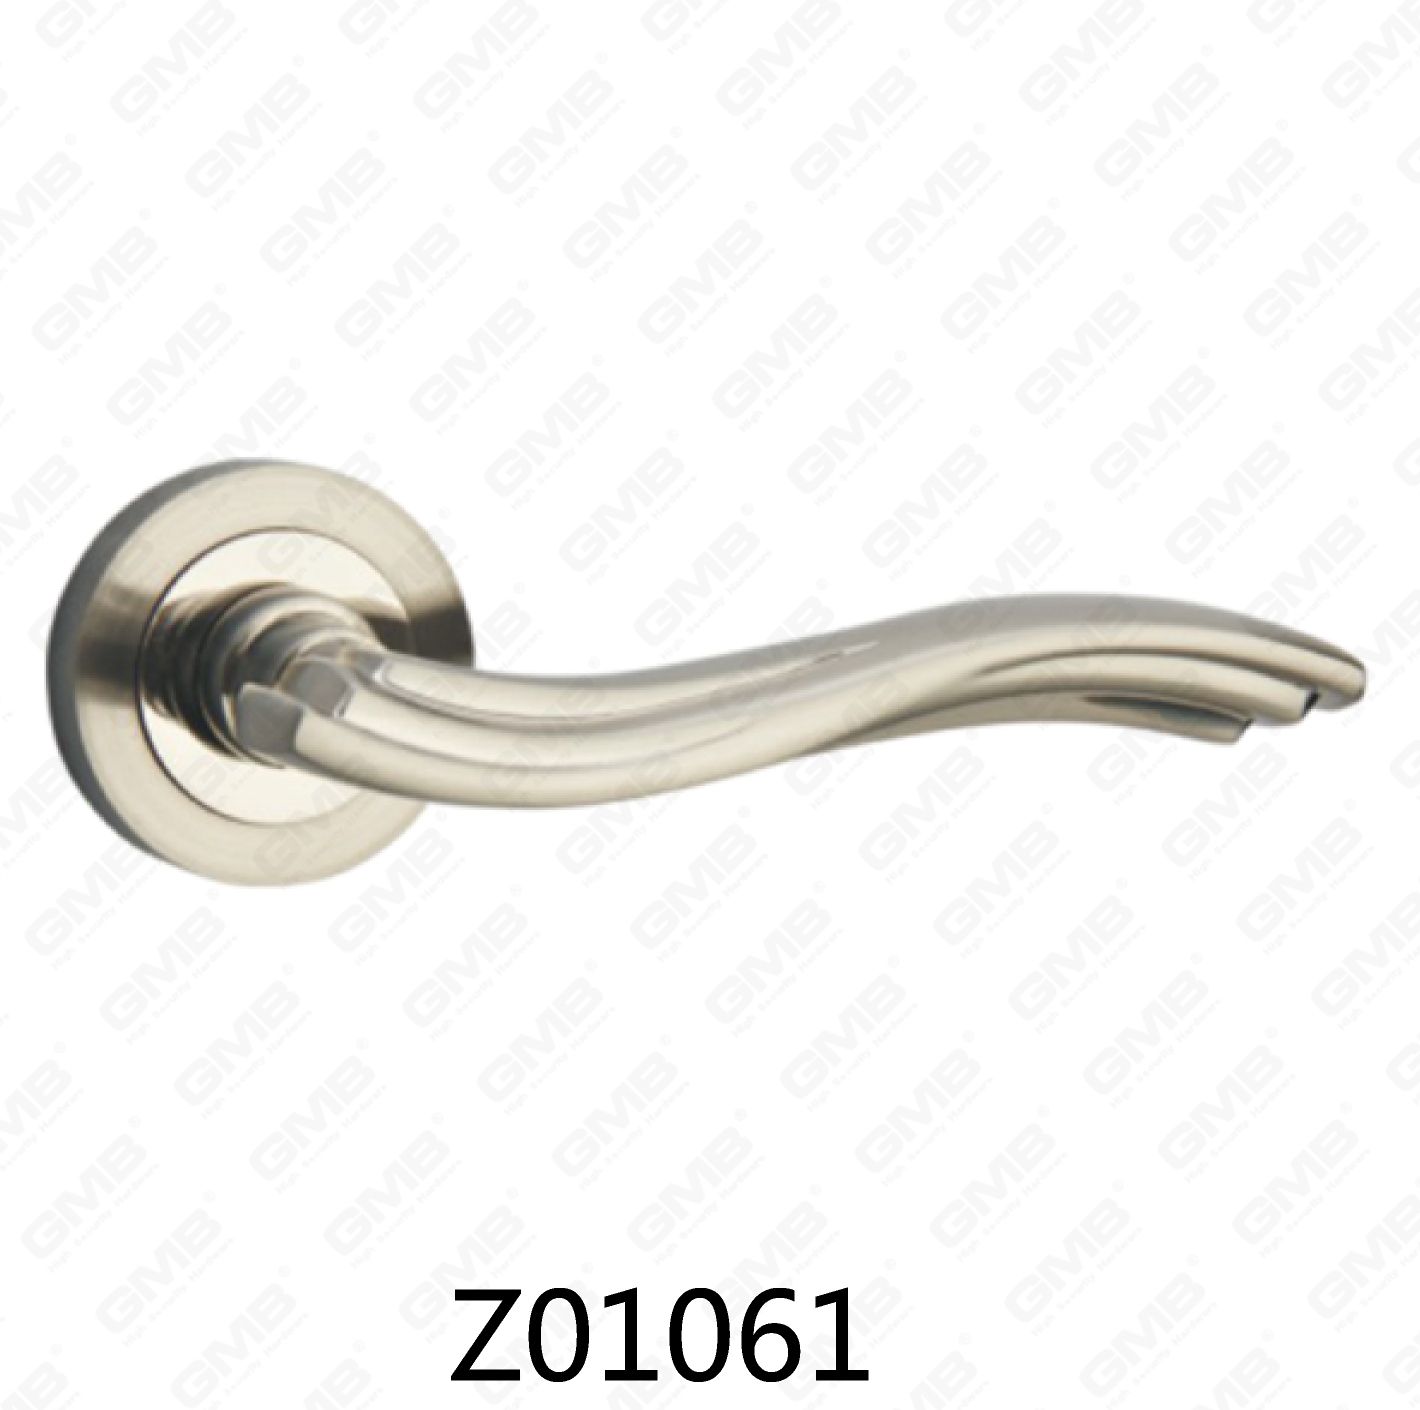 ידית דלת רוזטה מסגסוגת אבץ של Zamak עם רוזטה עגולה (Z01061)